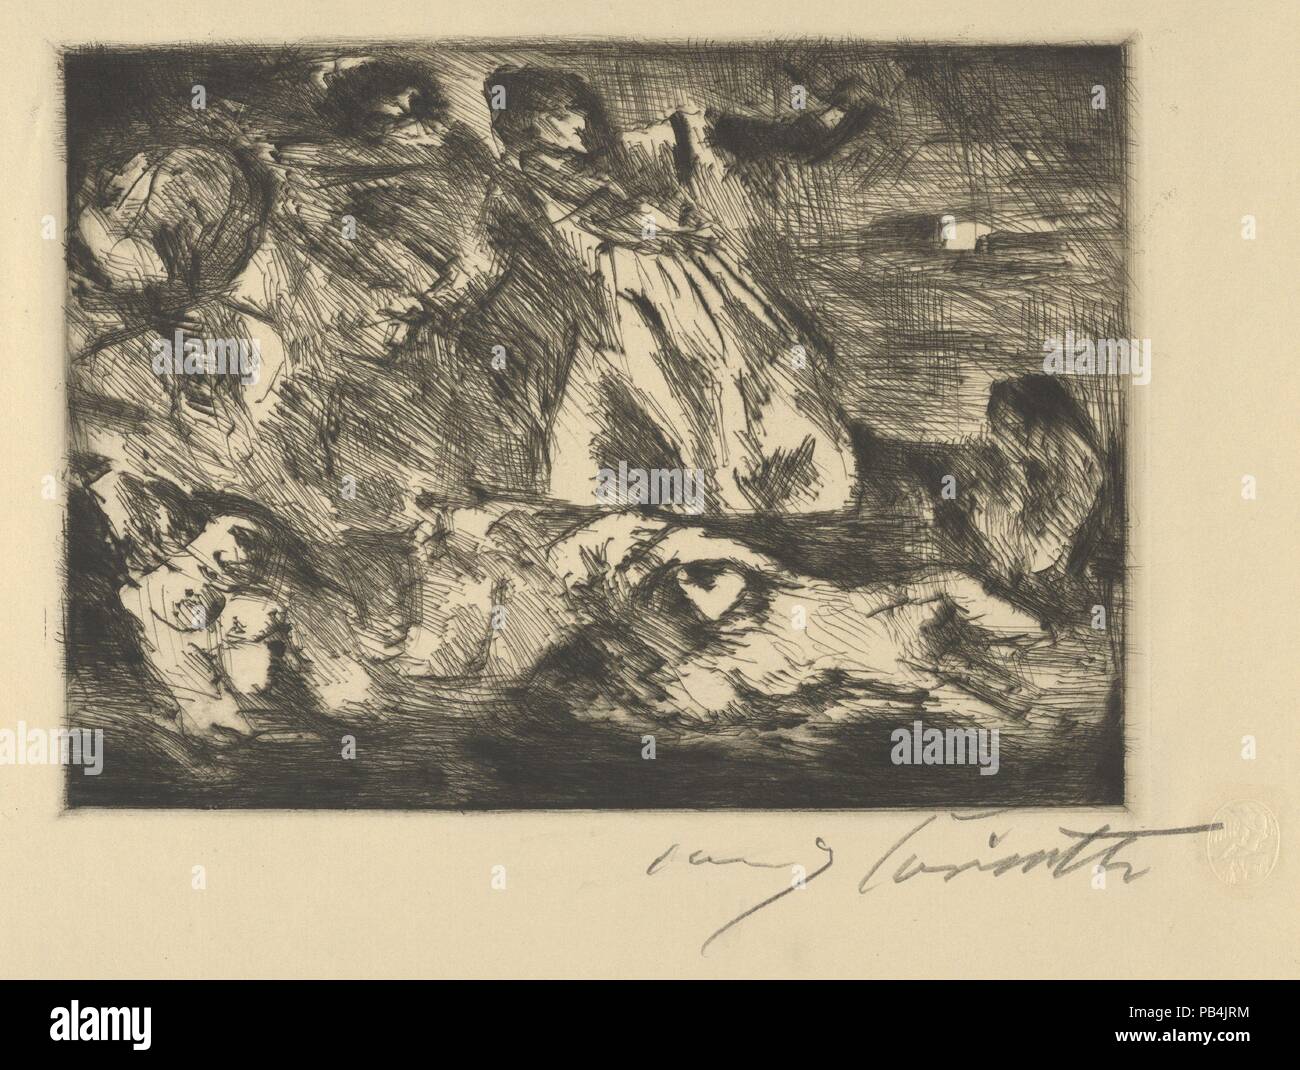 La barque de Dante. Artiste : Après Eugène Delacroix (Français, Charenton-Saint-Maurice 1798-1863 Paris) ; Lovis Corinth (allemand, Tapiau, Prusse 1858-1925 Zandvoort, Hollande). Fiche Technique : Dimensions : 11 x 17 5/8 à 11/16. (29,7 x 44,8 cm). Date : 1920-21. Musée : Metropolitan Museum of Art, New York, USA. Banque D'Images